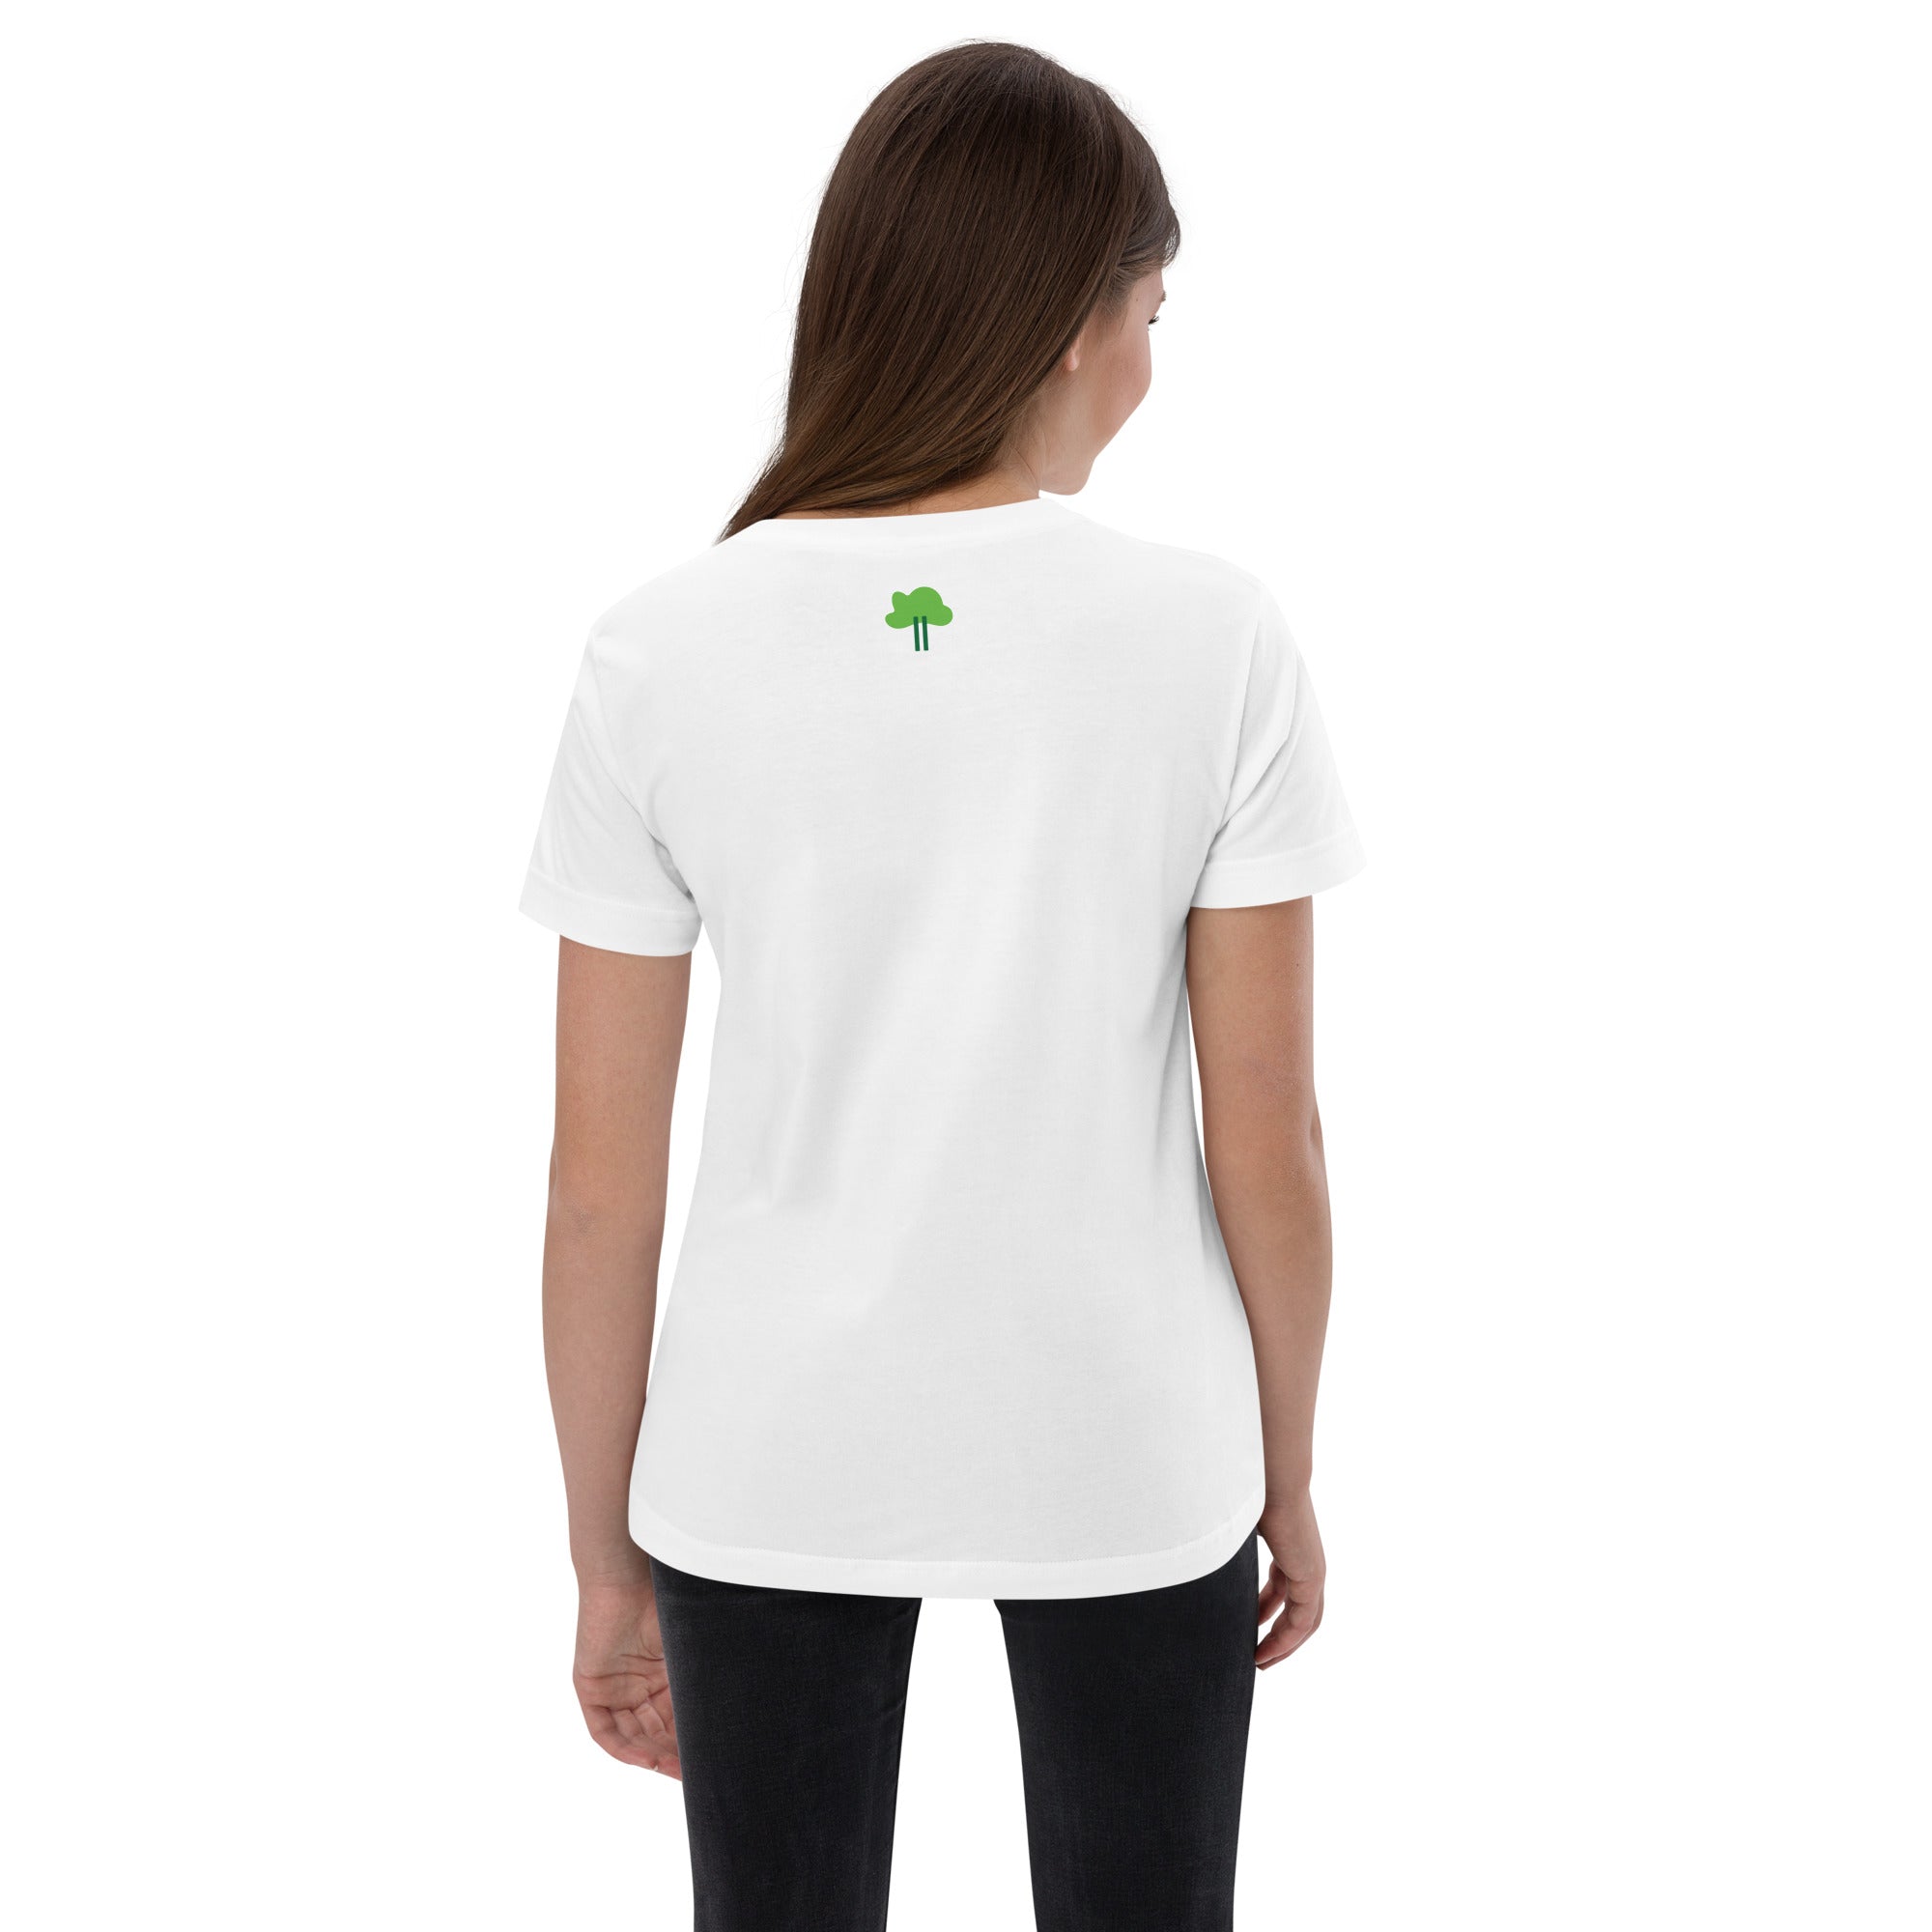 I Temp - Sabana - K3 | Youth jersey t-shirt